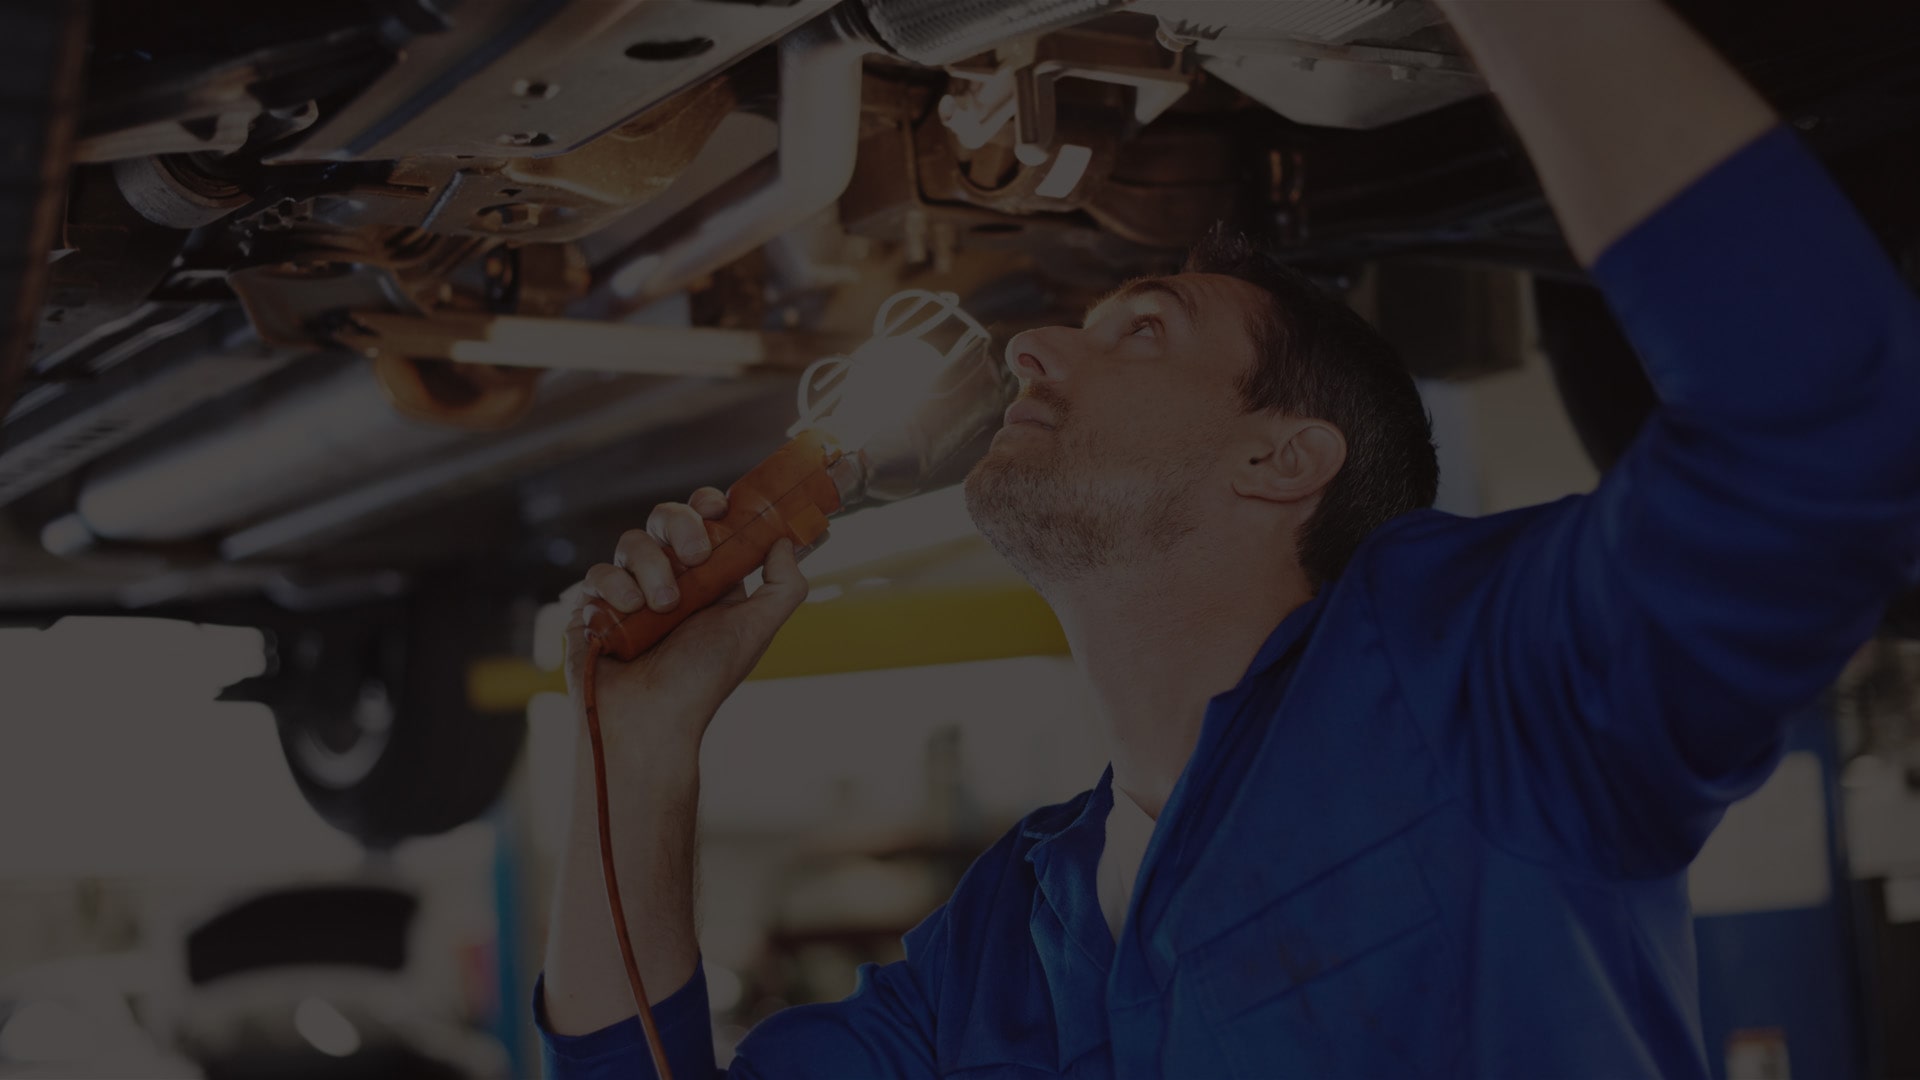 Auto repairs and maintenance